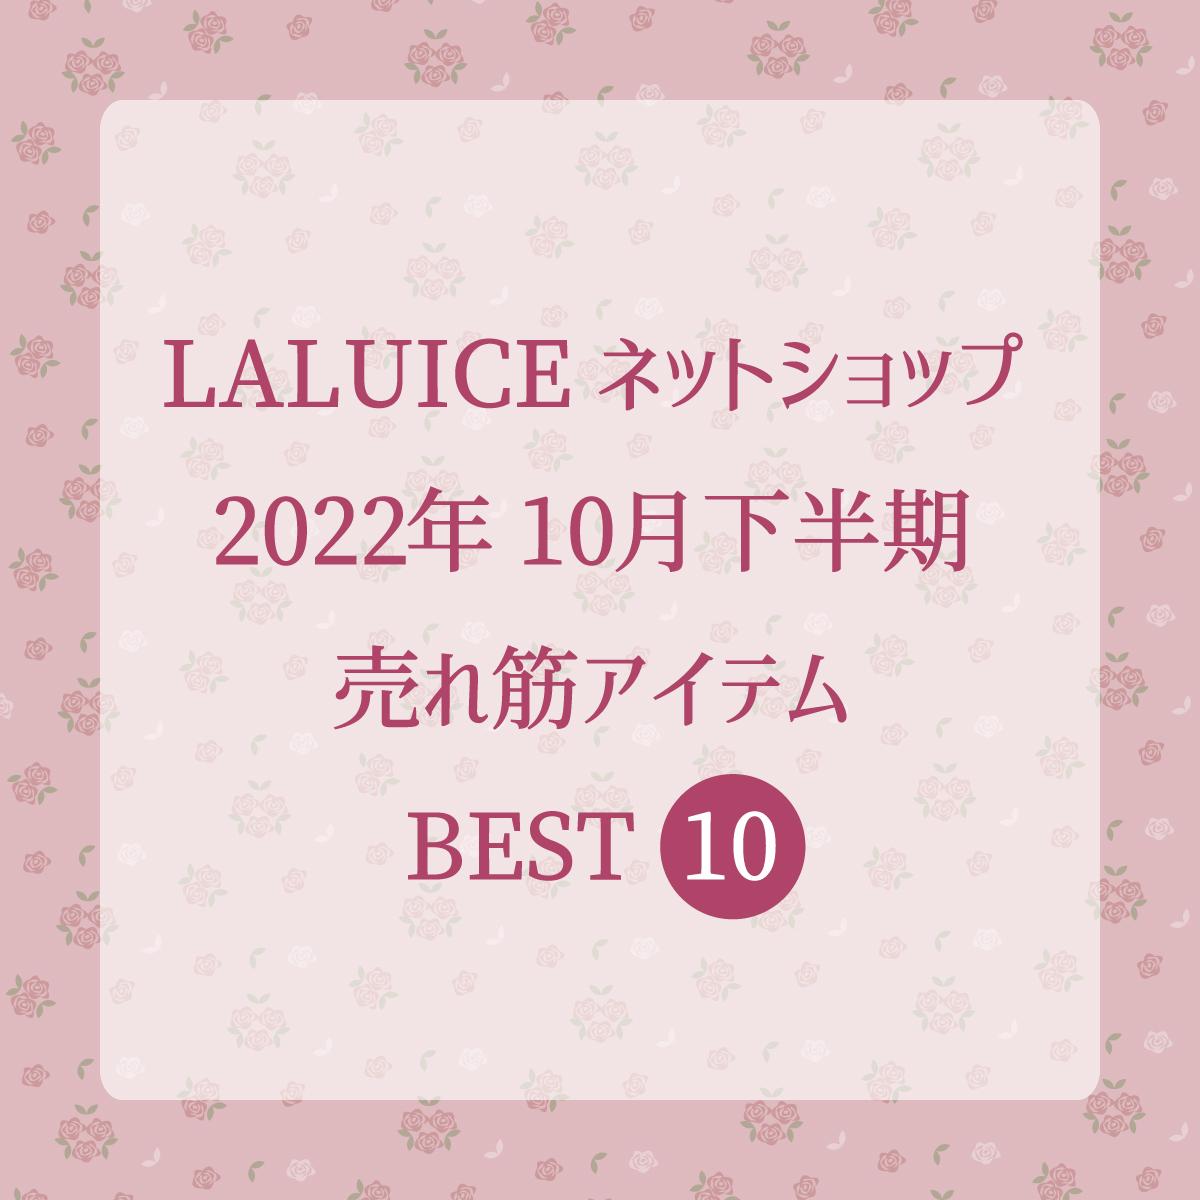 2022年10月下半期(10/16～10/31) LALUICEネットショップ売れ筋アイテム BEST10